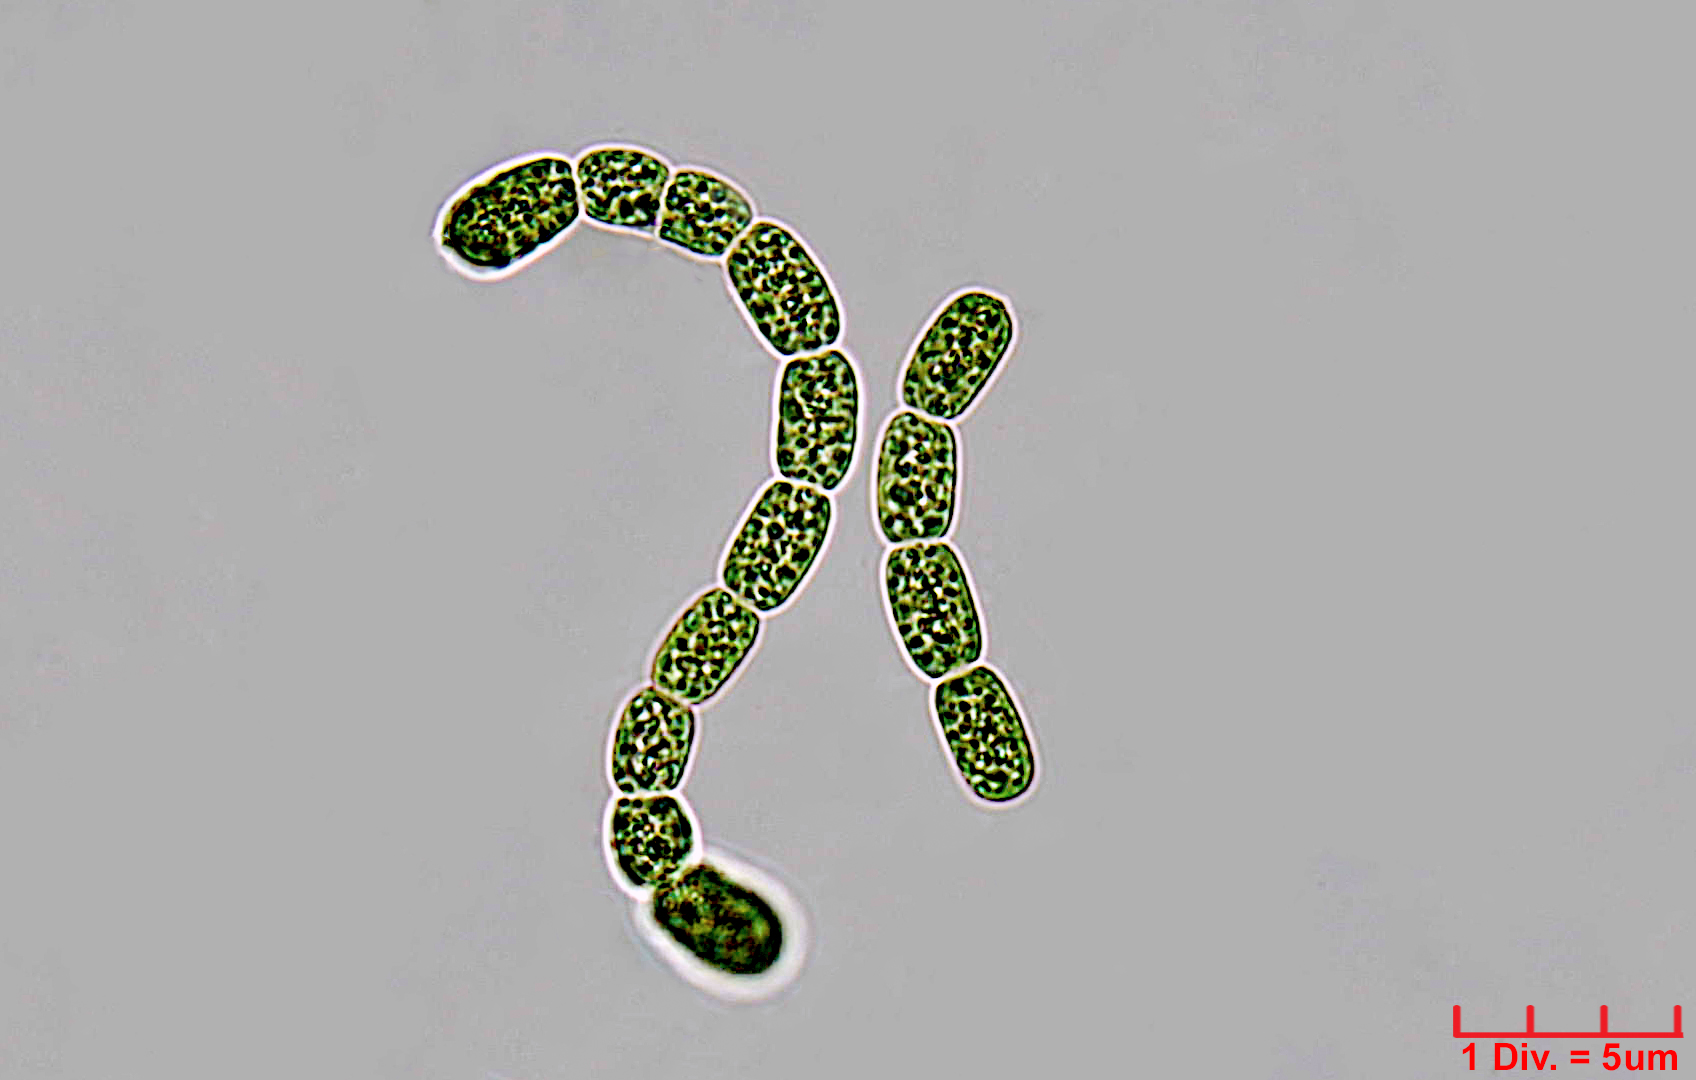 ./././Cyanobacteria/Nostocales/Nostocaceae/Desmonostoc/muscorum/desmonostoc-muscorum-593.jpg